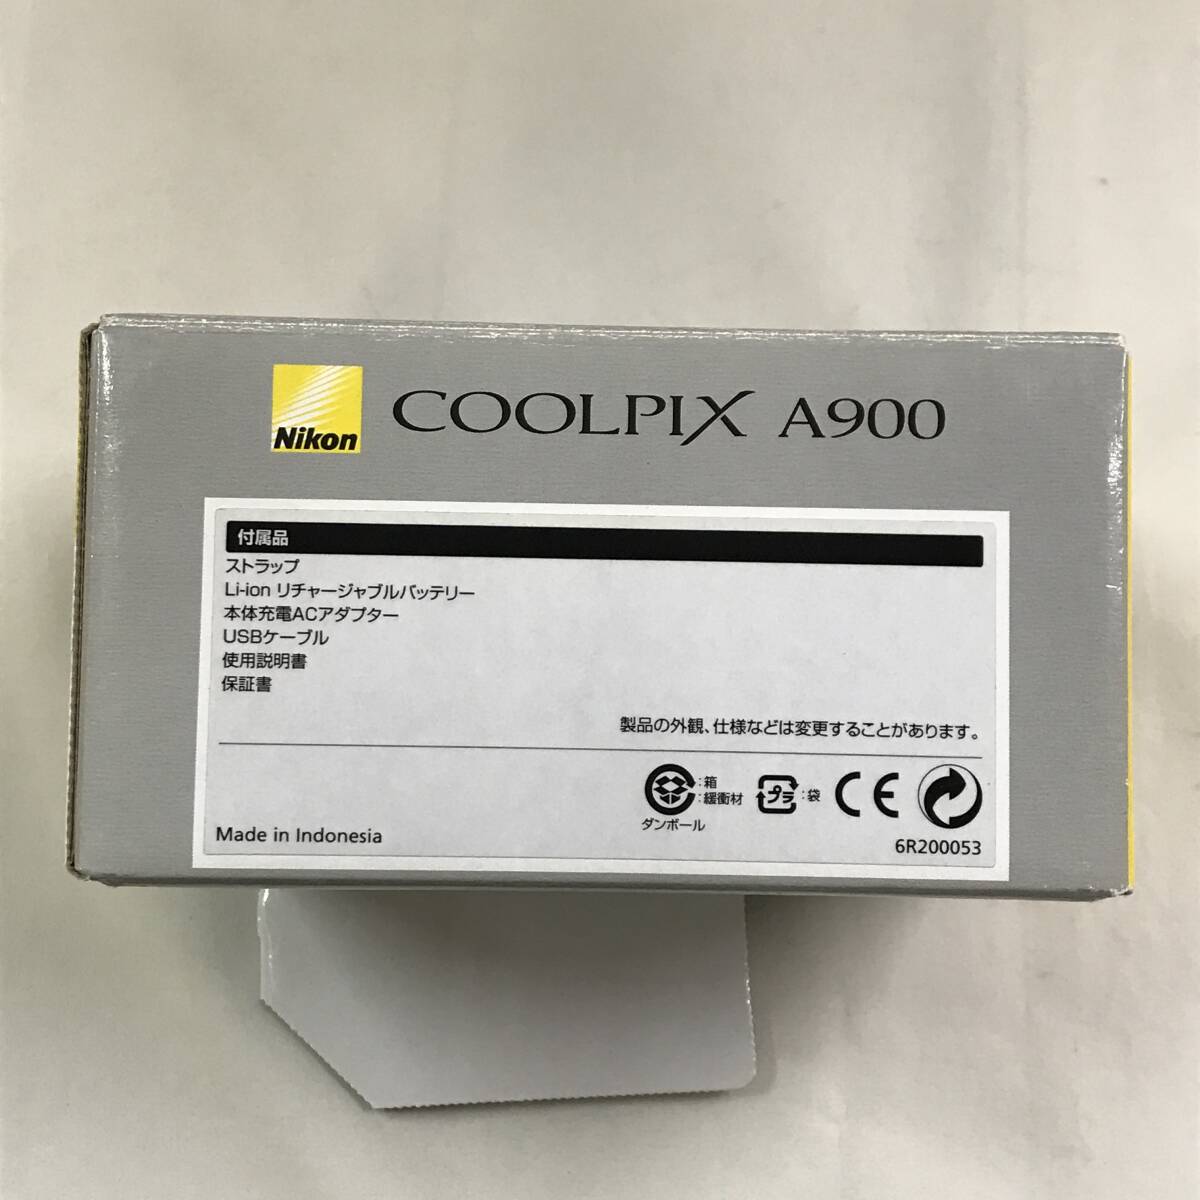 sb2477 бесплатная доставка! текущее состояние товар Nikon Nikon COOLPIX A900 компактный цифровой фотоаппарат серебряный корпус * батарея только 